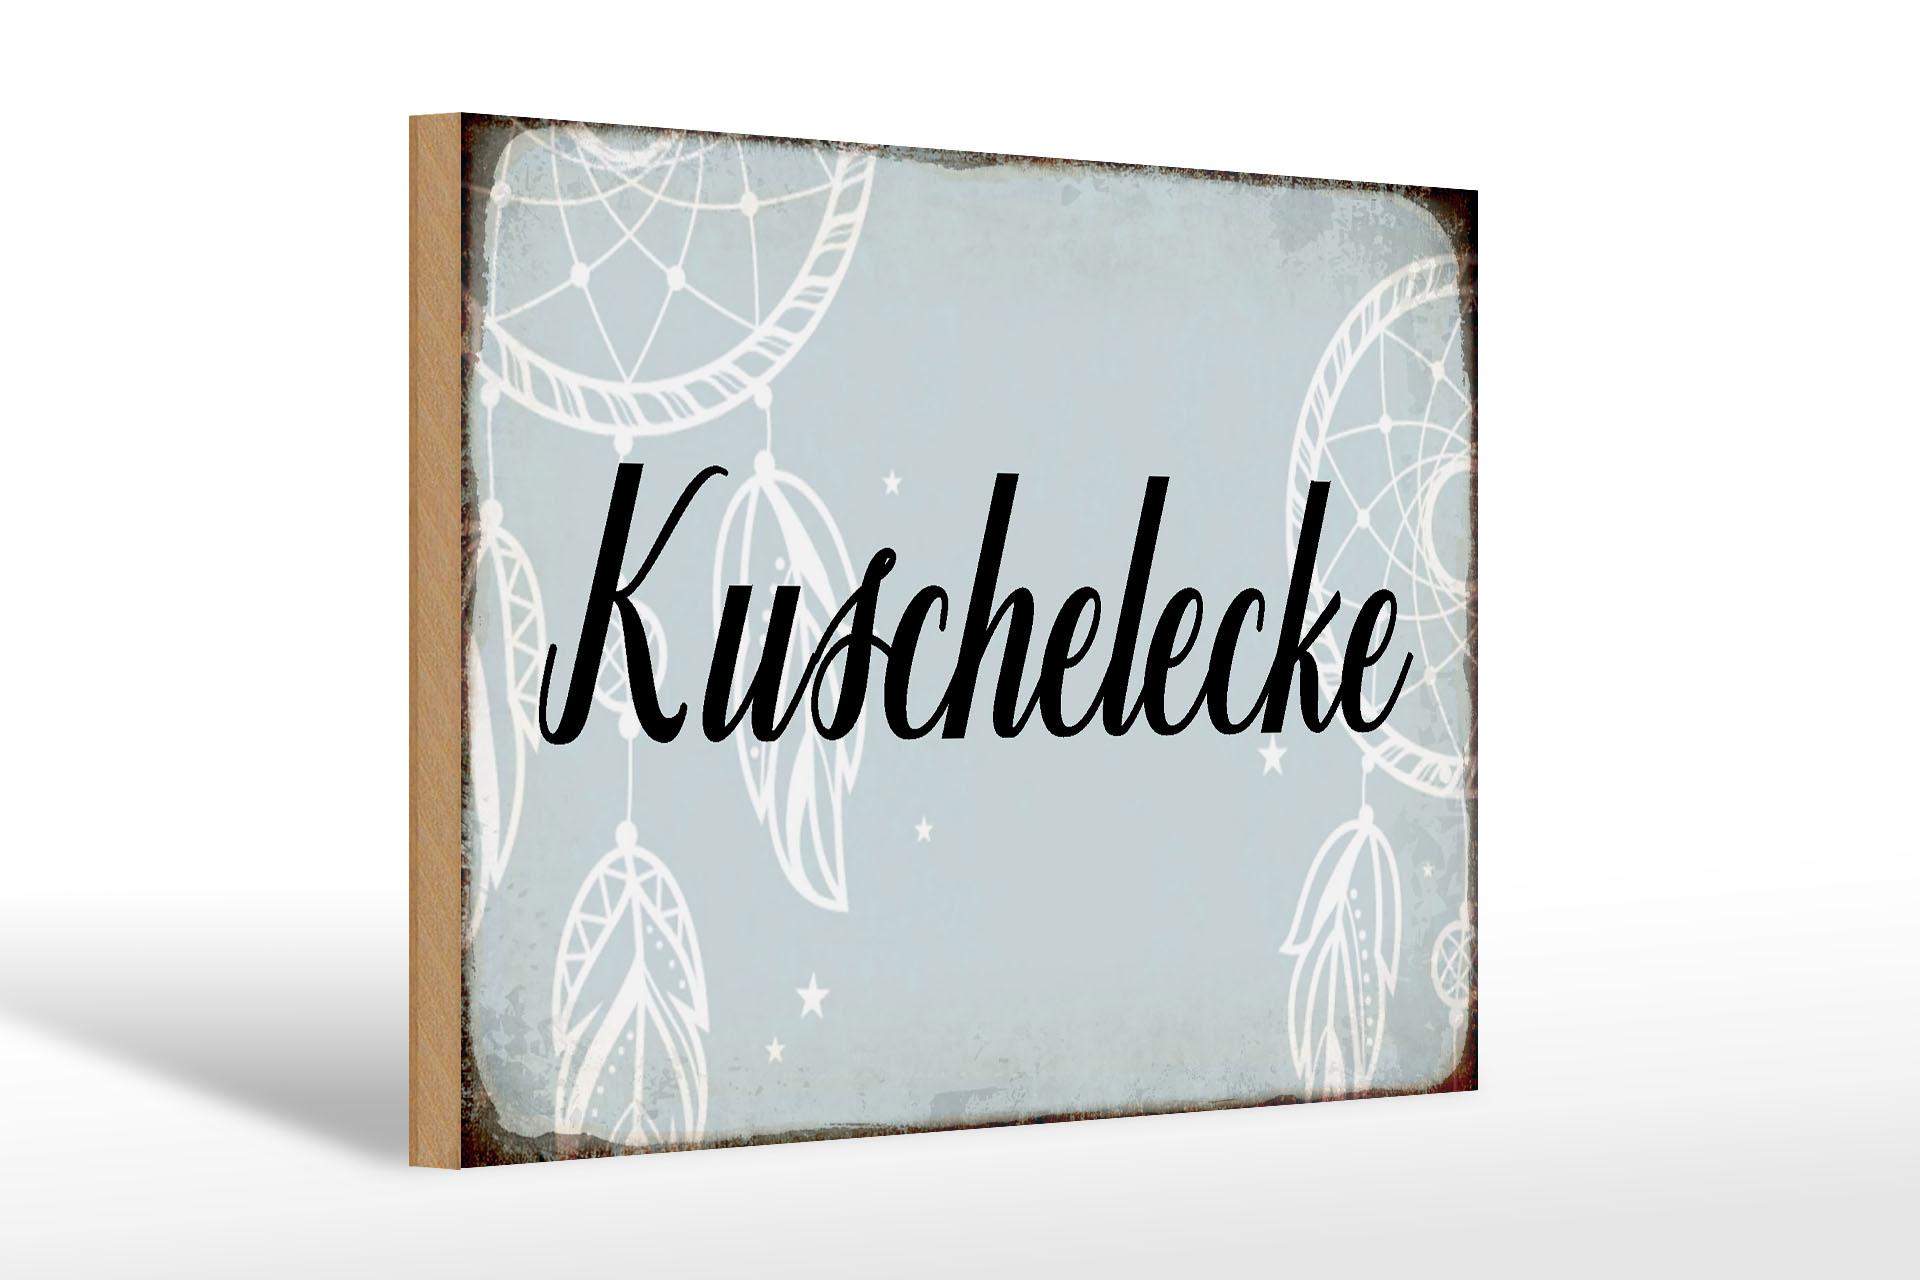 Holzschild Spruch 30x20 cm Kuschelecke Geschenk Holz Deko Schild wooden sign